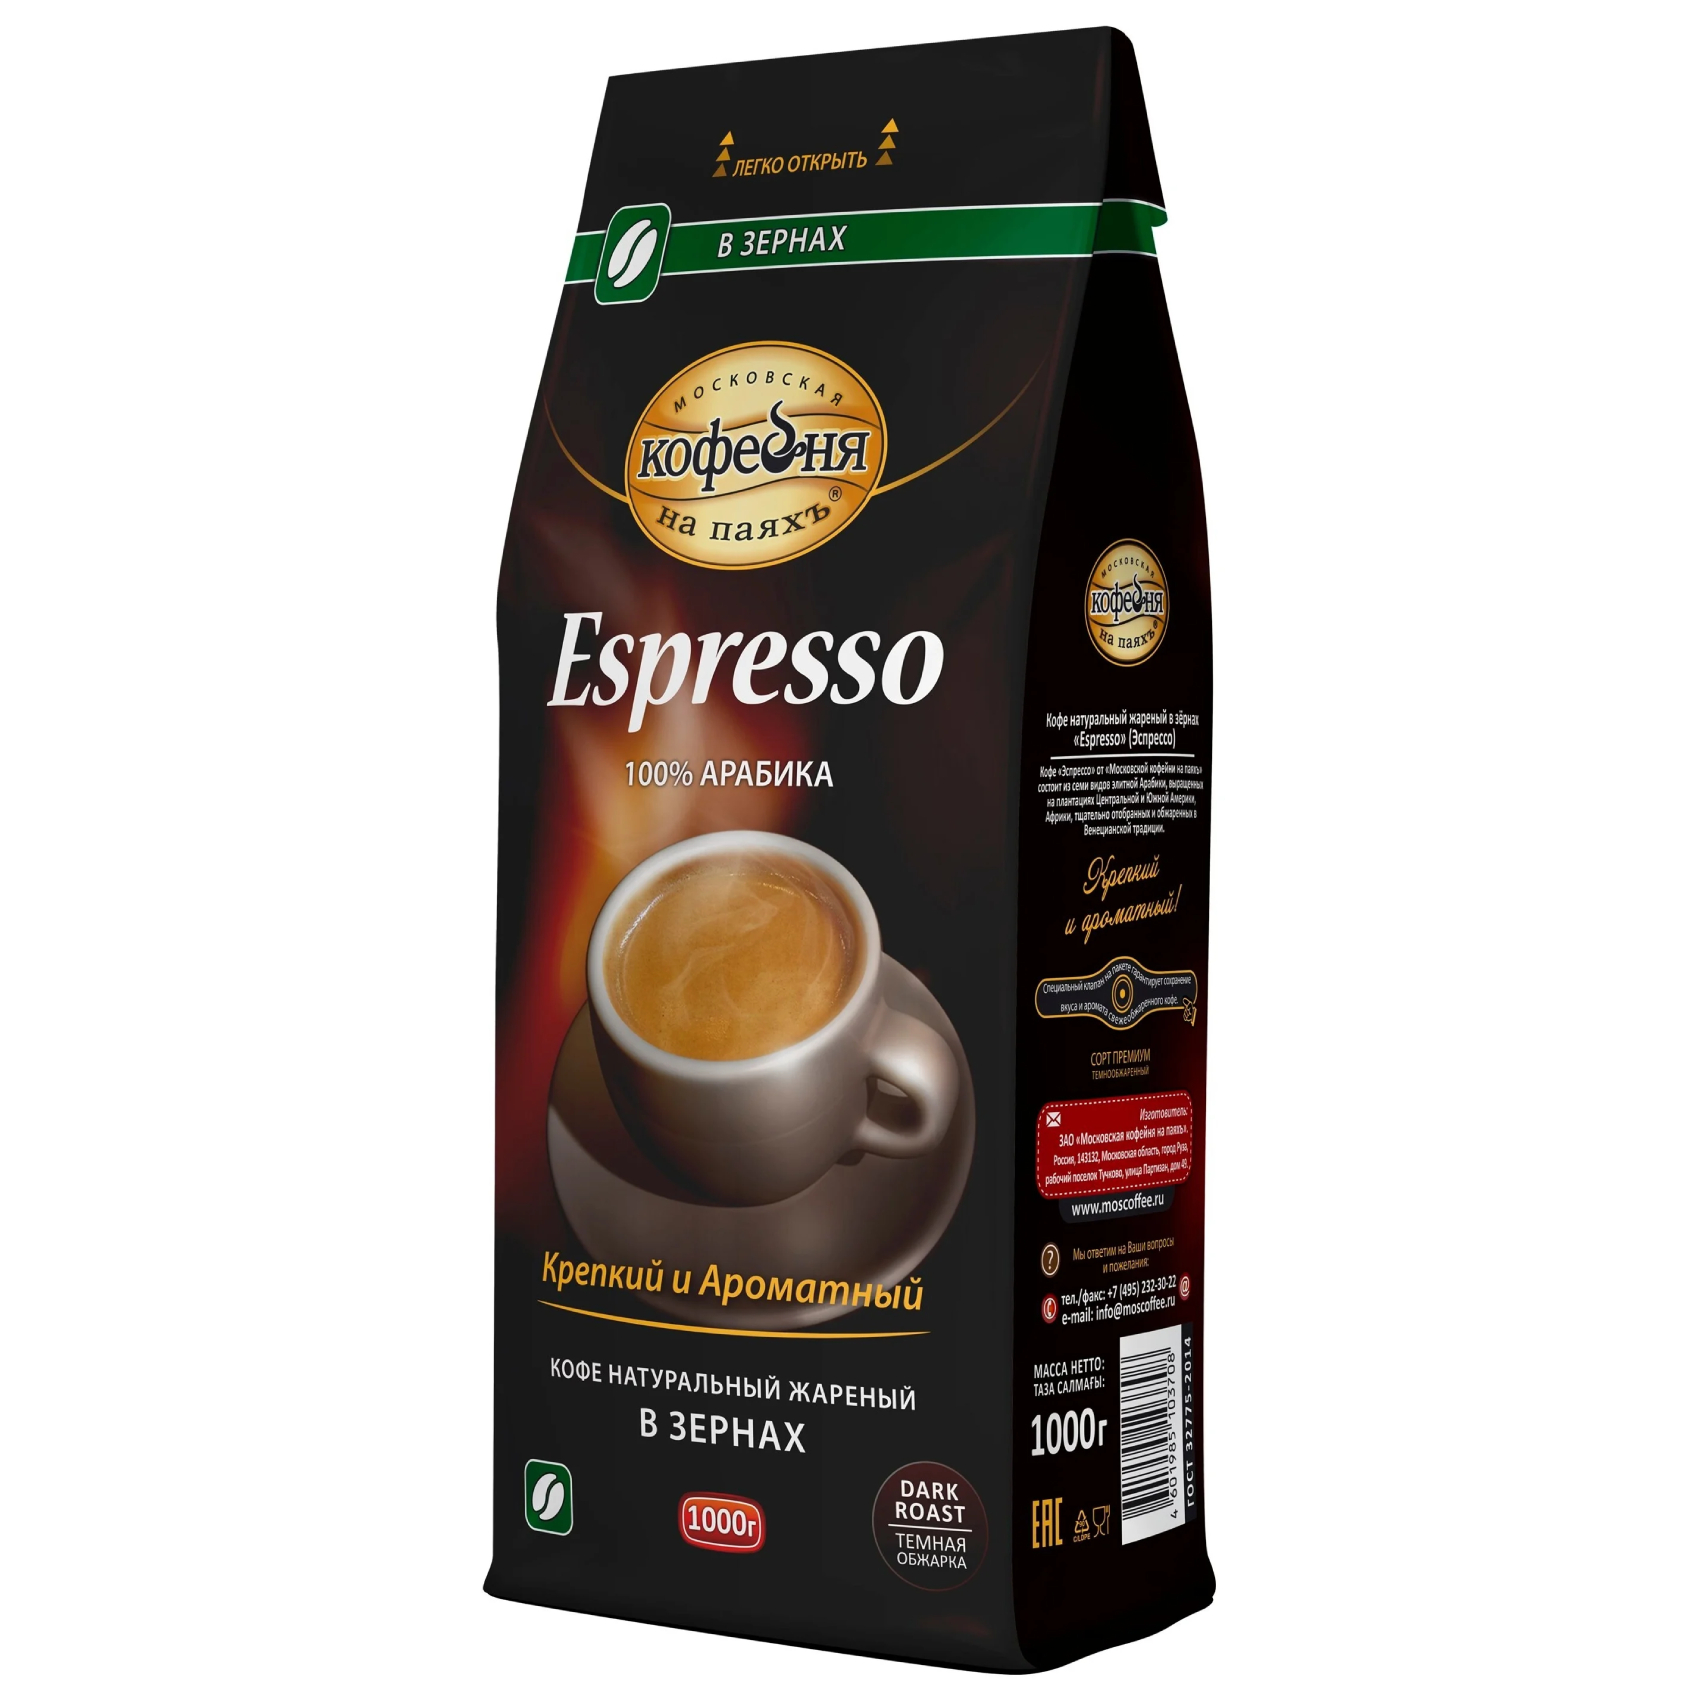 Кофе в зернах Московская Кофейня на Паяхъ Espresso 1 кг кофе в зернах carte noire crema delice жареный 230 г